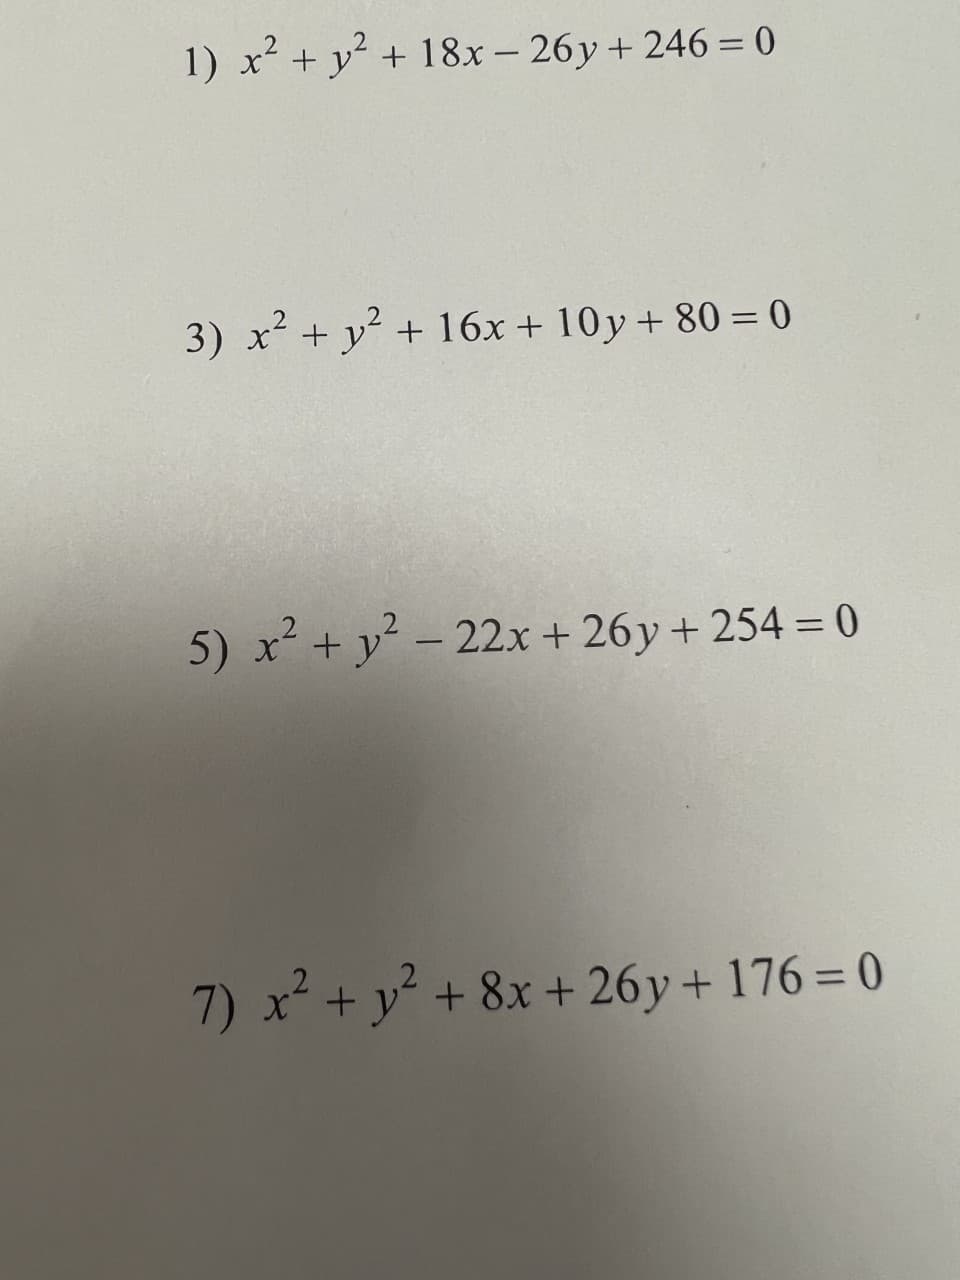 1) x² + y² + 18x-26y +246 = 0
3) x² + y² + 16x +10y + 80 = 0
5) x² + y² - 22x + 26y +254 = 0
7) x² + y² + 8x +26y +176= 0